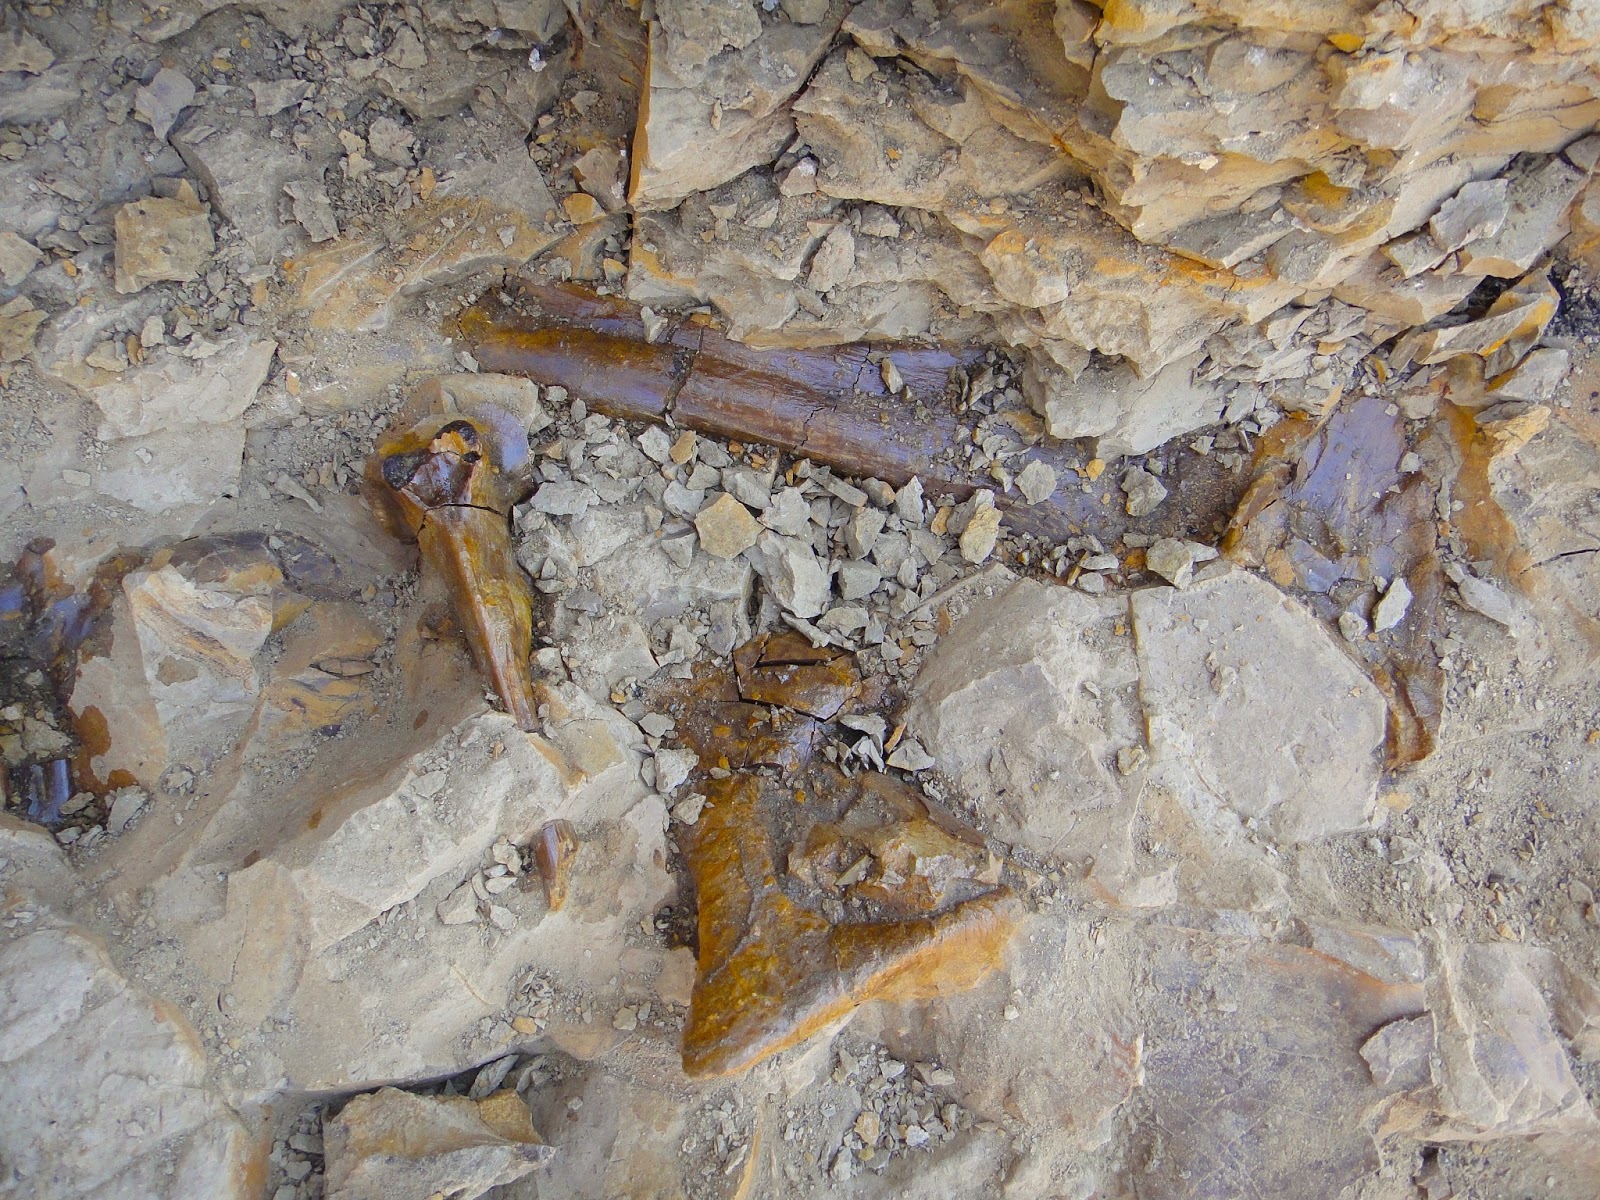 008 – Centrosaurus Bones